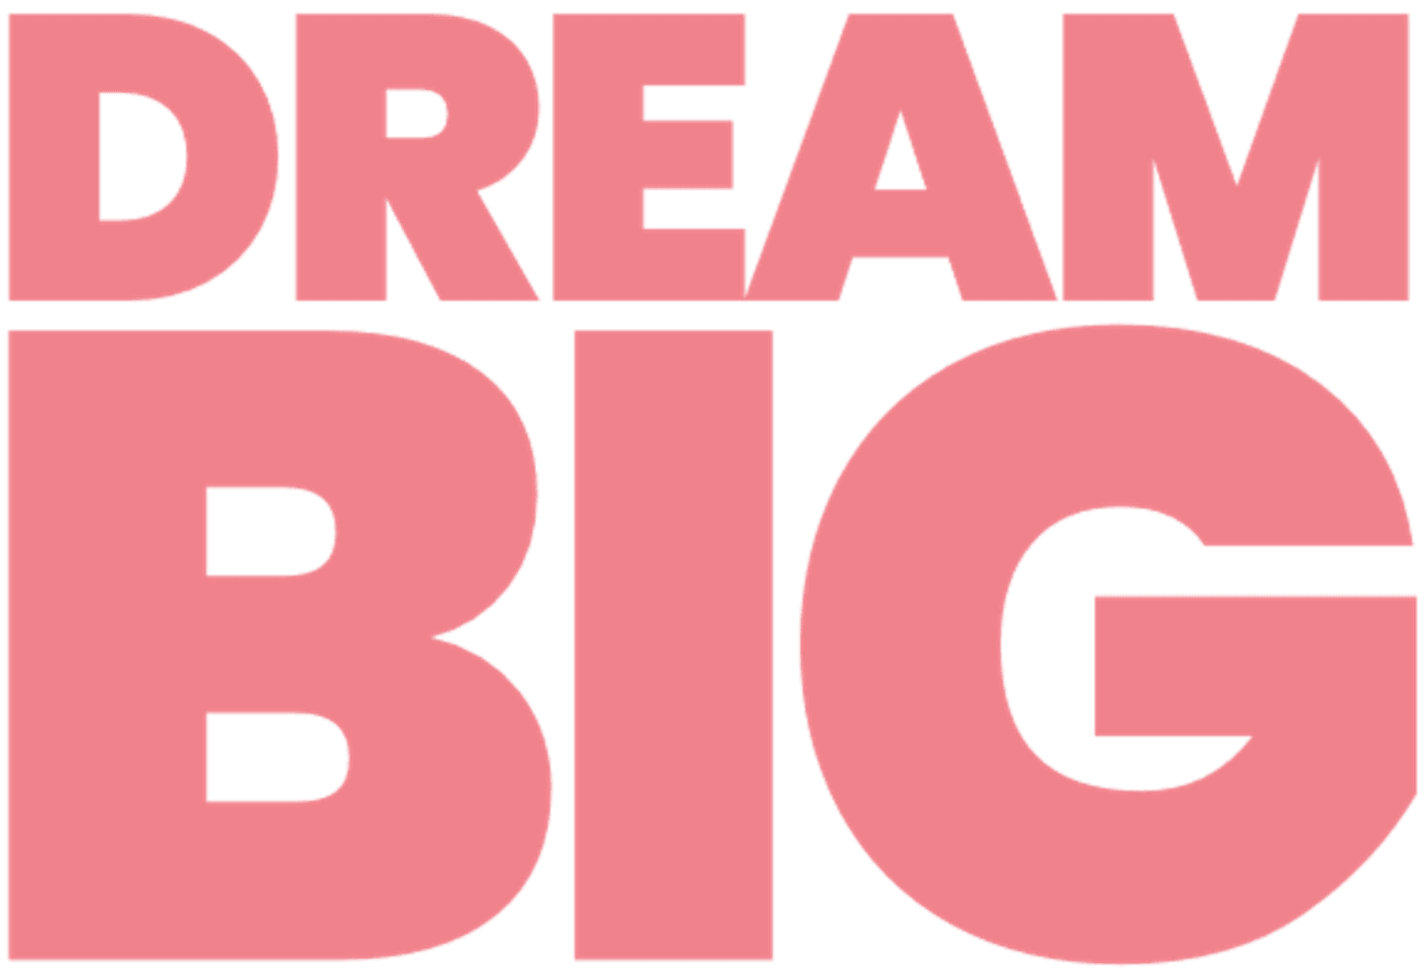 a logo of our value dream big